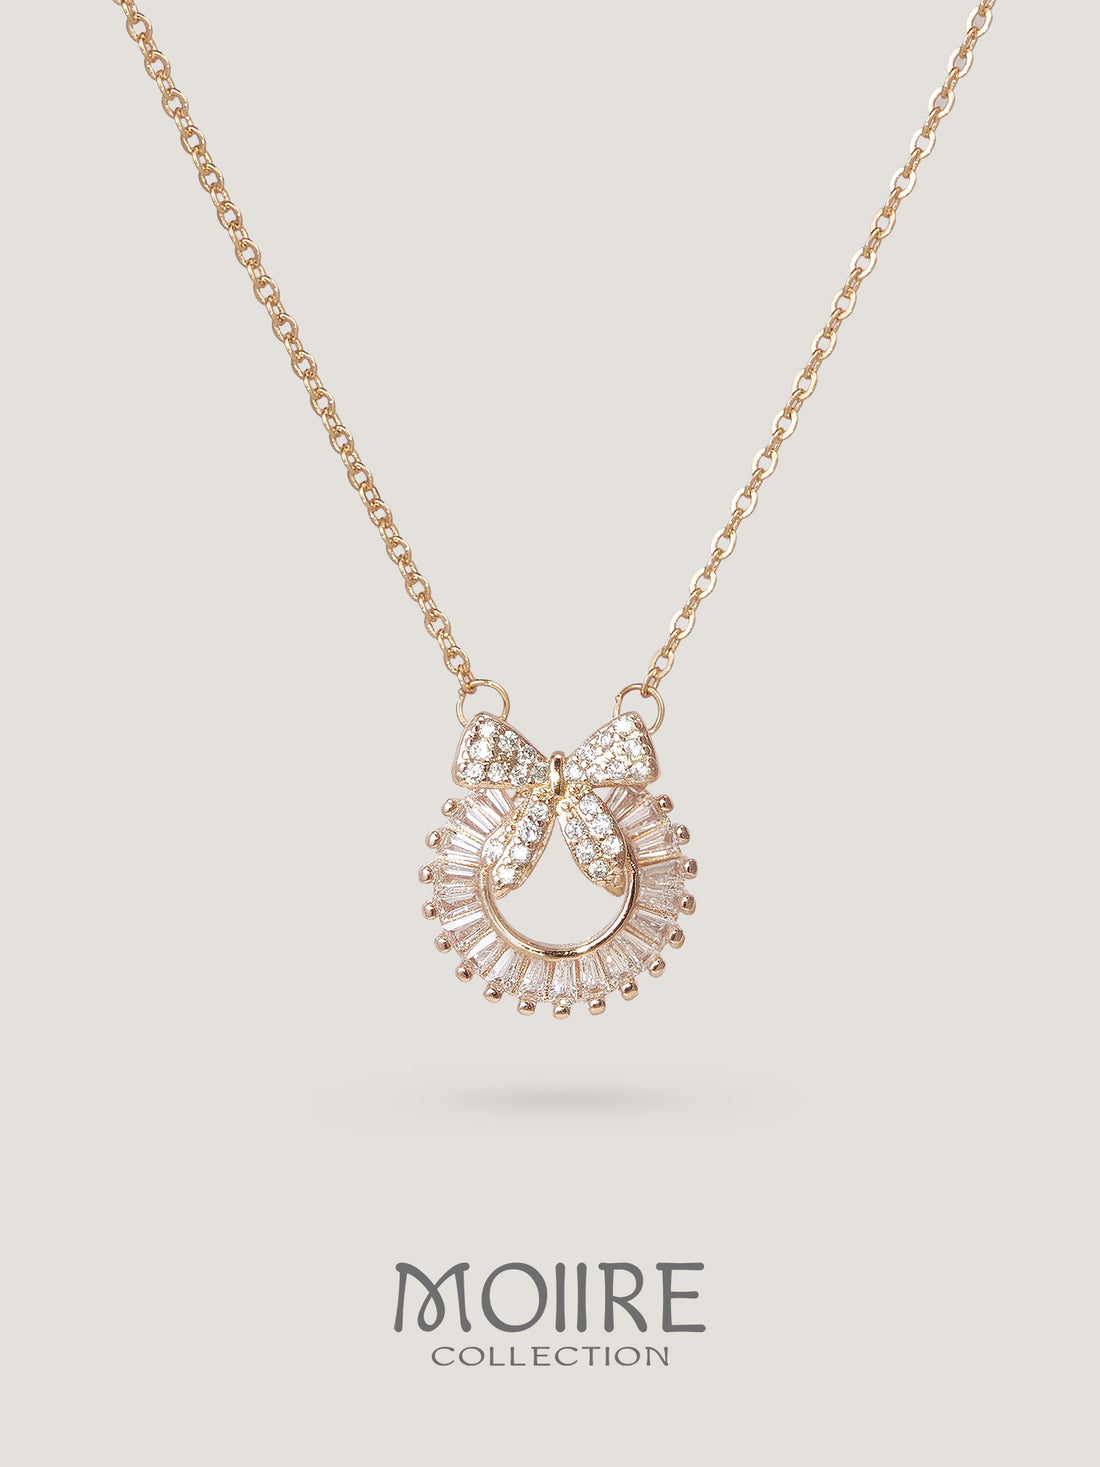 Moiire Jewelry | 燈火方向